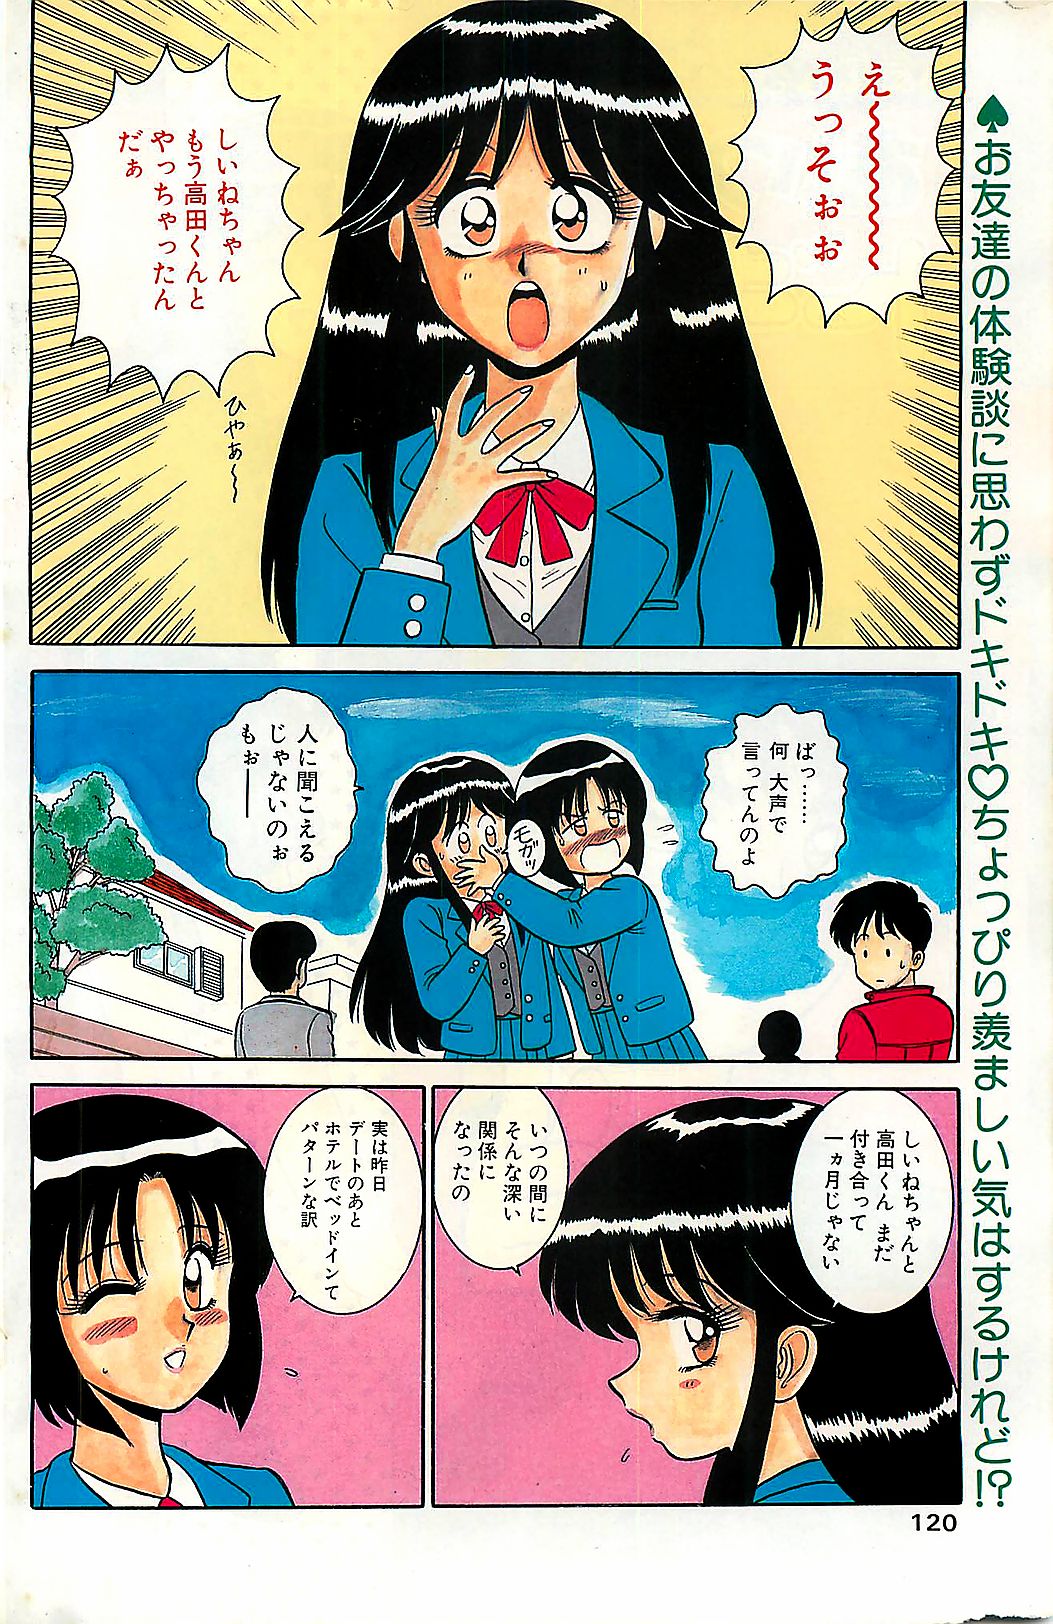 (雑誌) COMIC ドライ-アップ No.4 1995年02月号